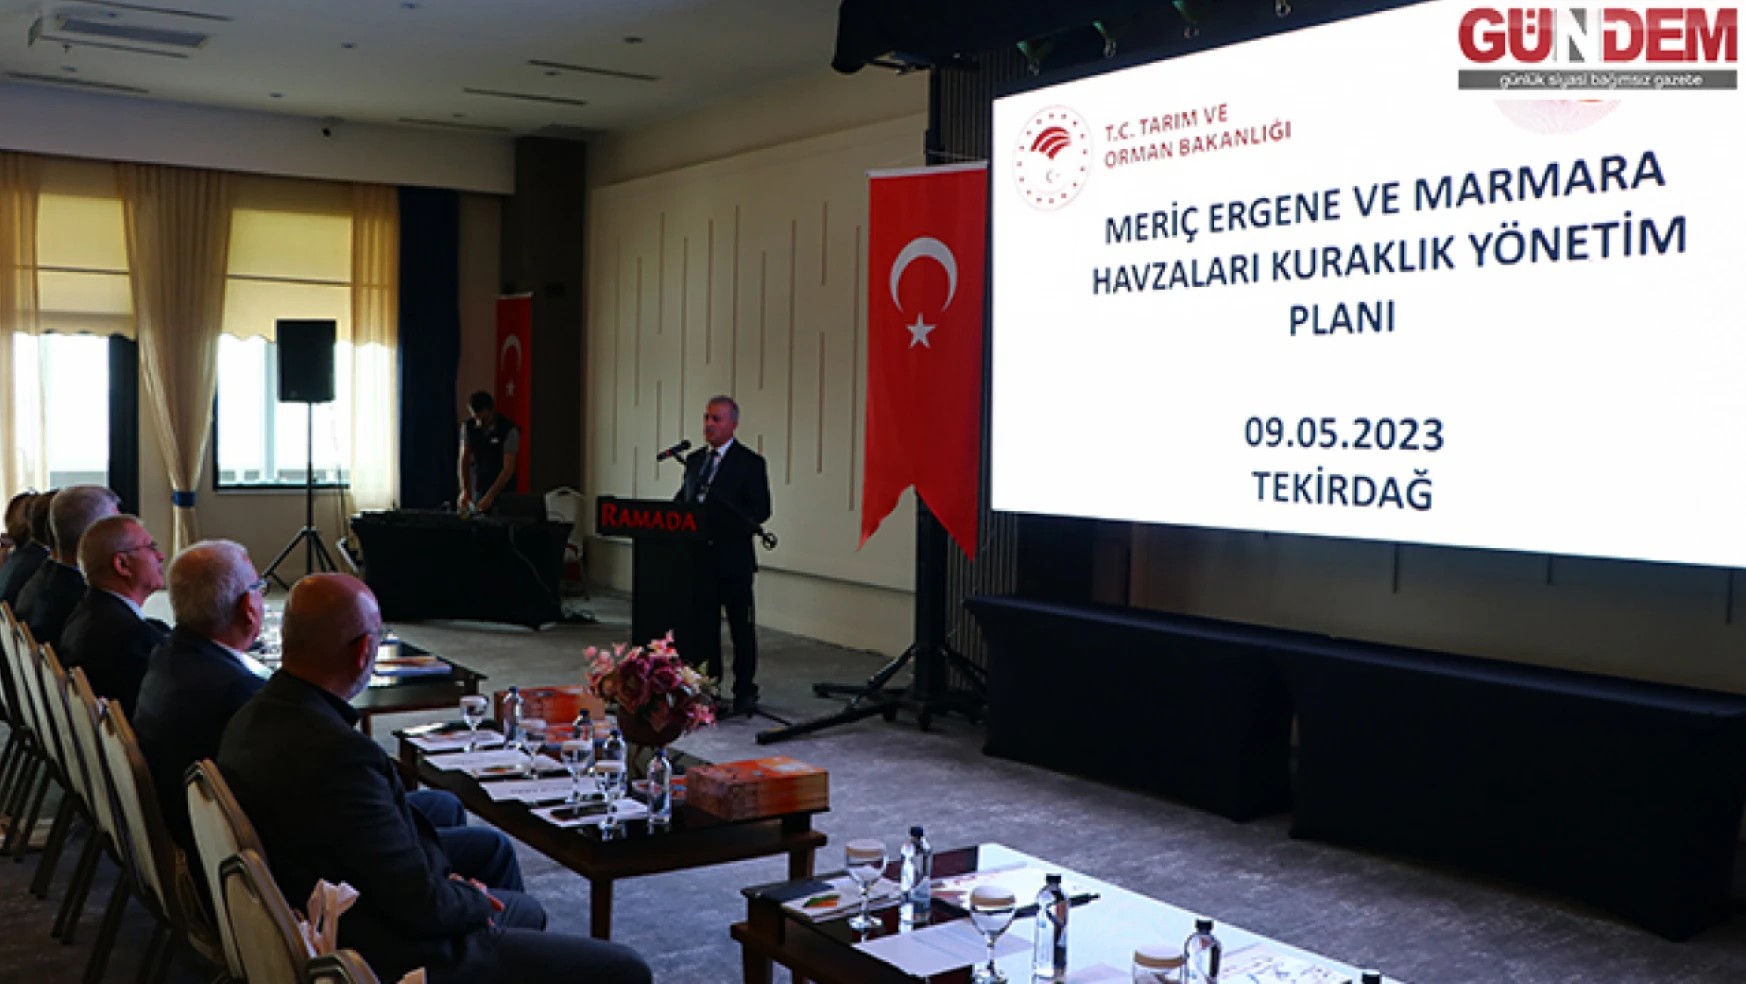 Tekirdağ'da Meriç Ergene ve Marmara Havzaları Kuraklık Yönetim Planı toplantısı yapıldı